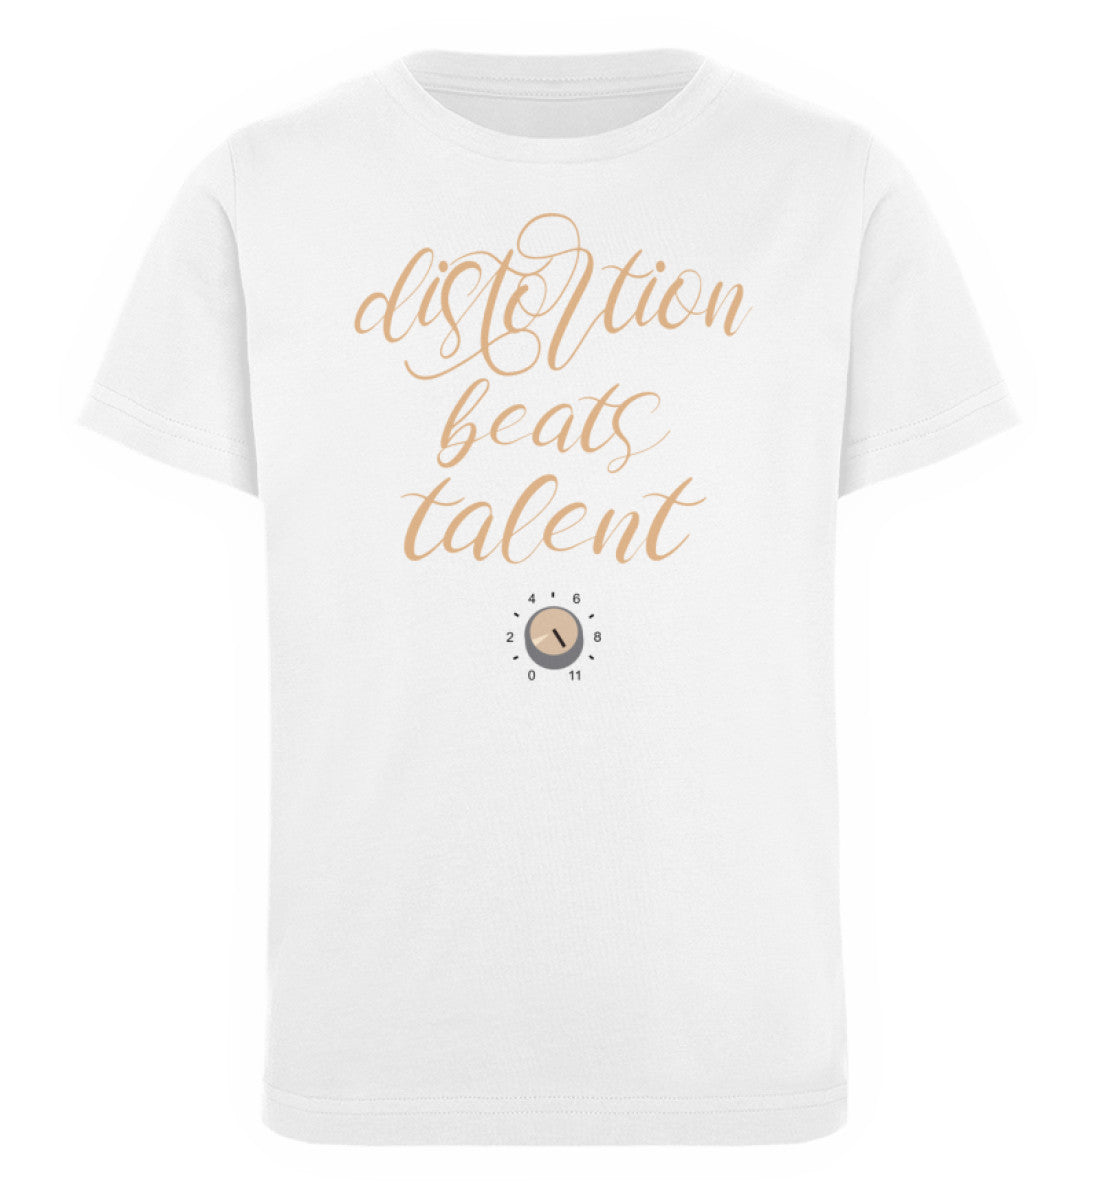 Weißes Kinder T-Shirt für Mädchen und Jungen bedruckt mit dem Design der Roger Rockawoo Kollektion E-Gitarre Distortion beats Talent